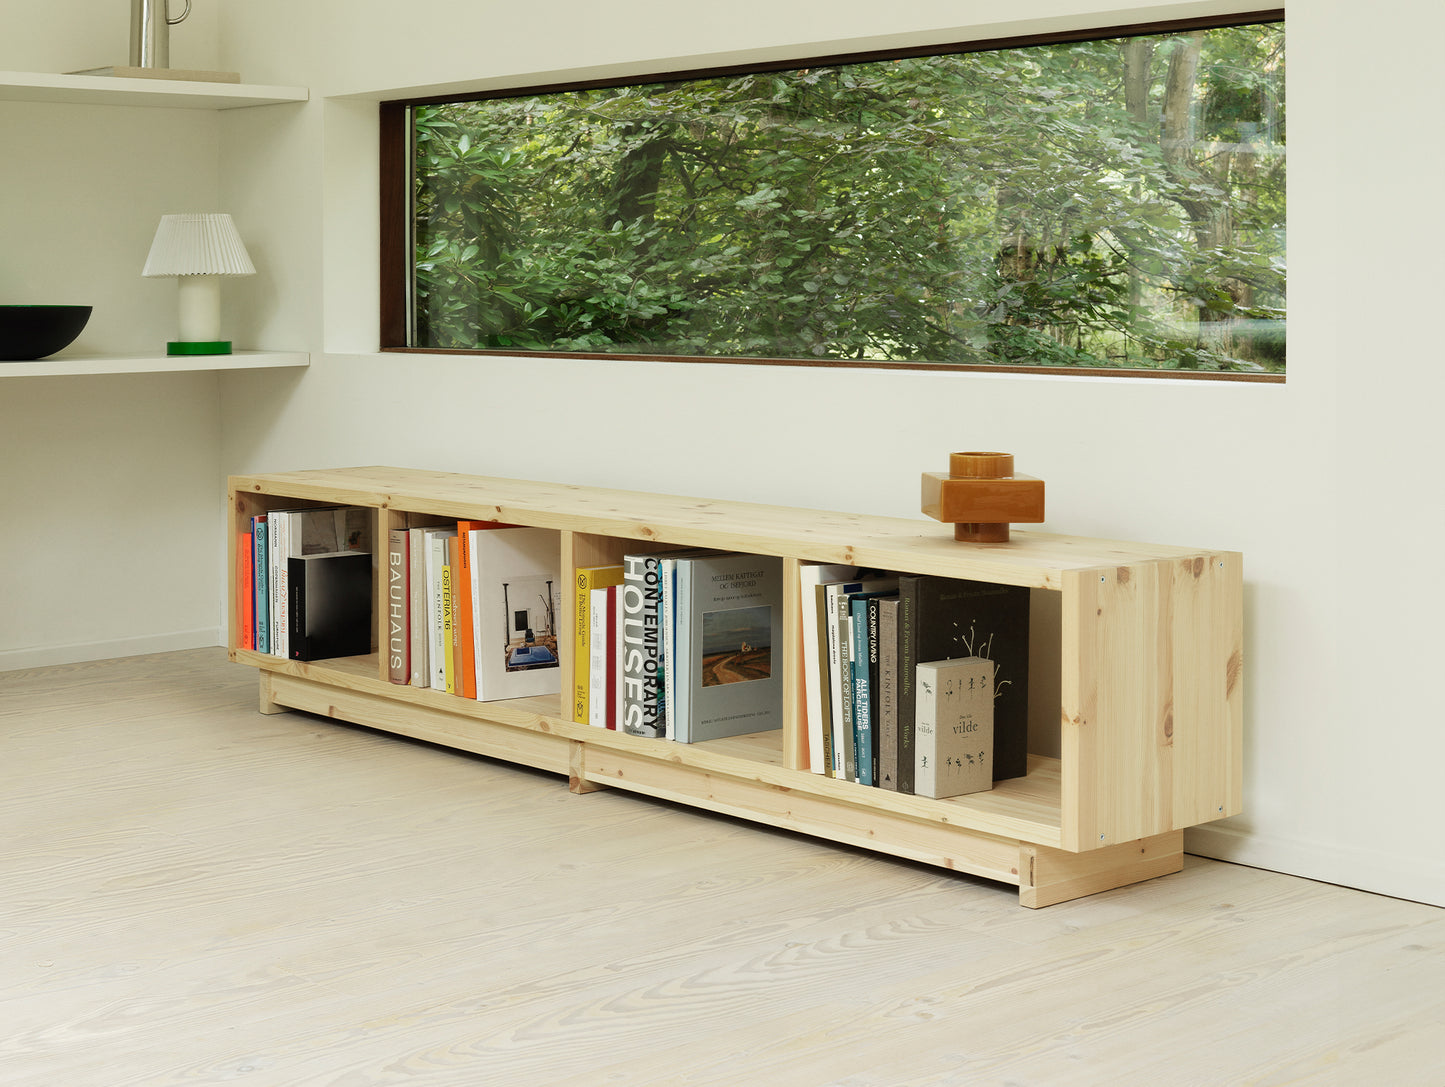 Plank Bookcase by Normann Copenhagen - Low